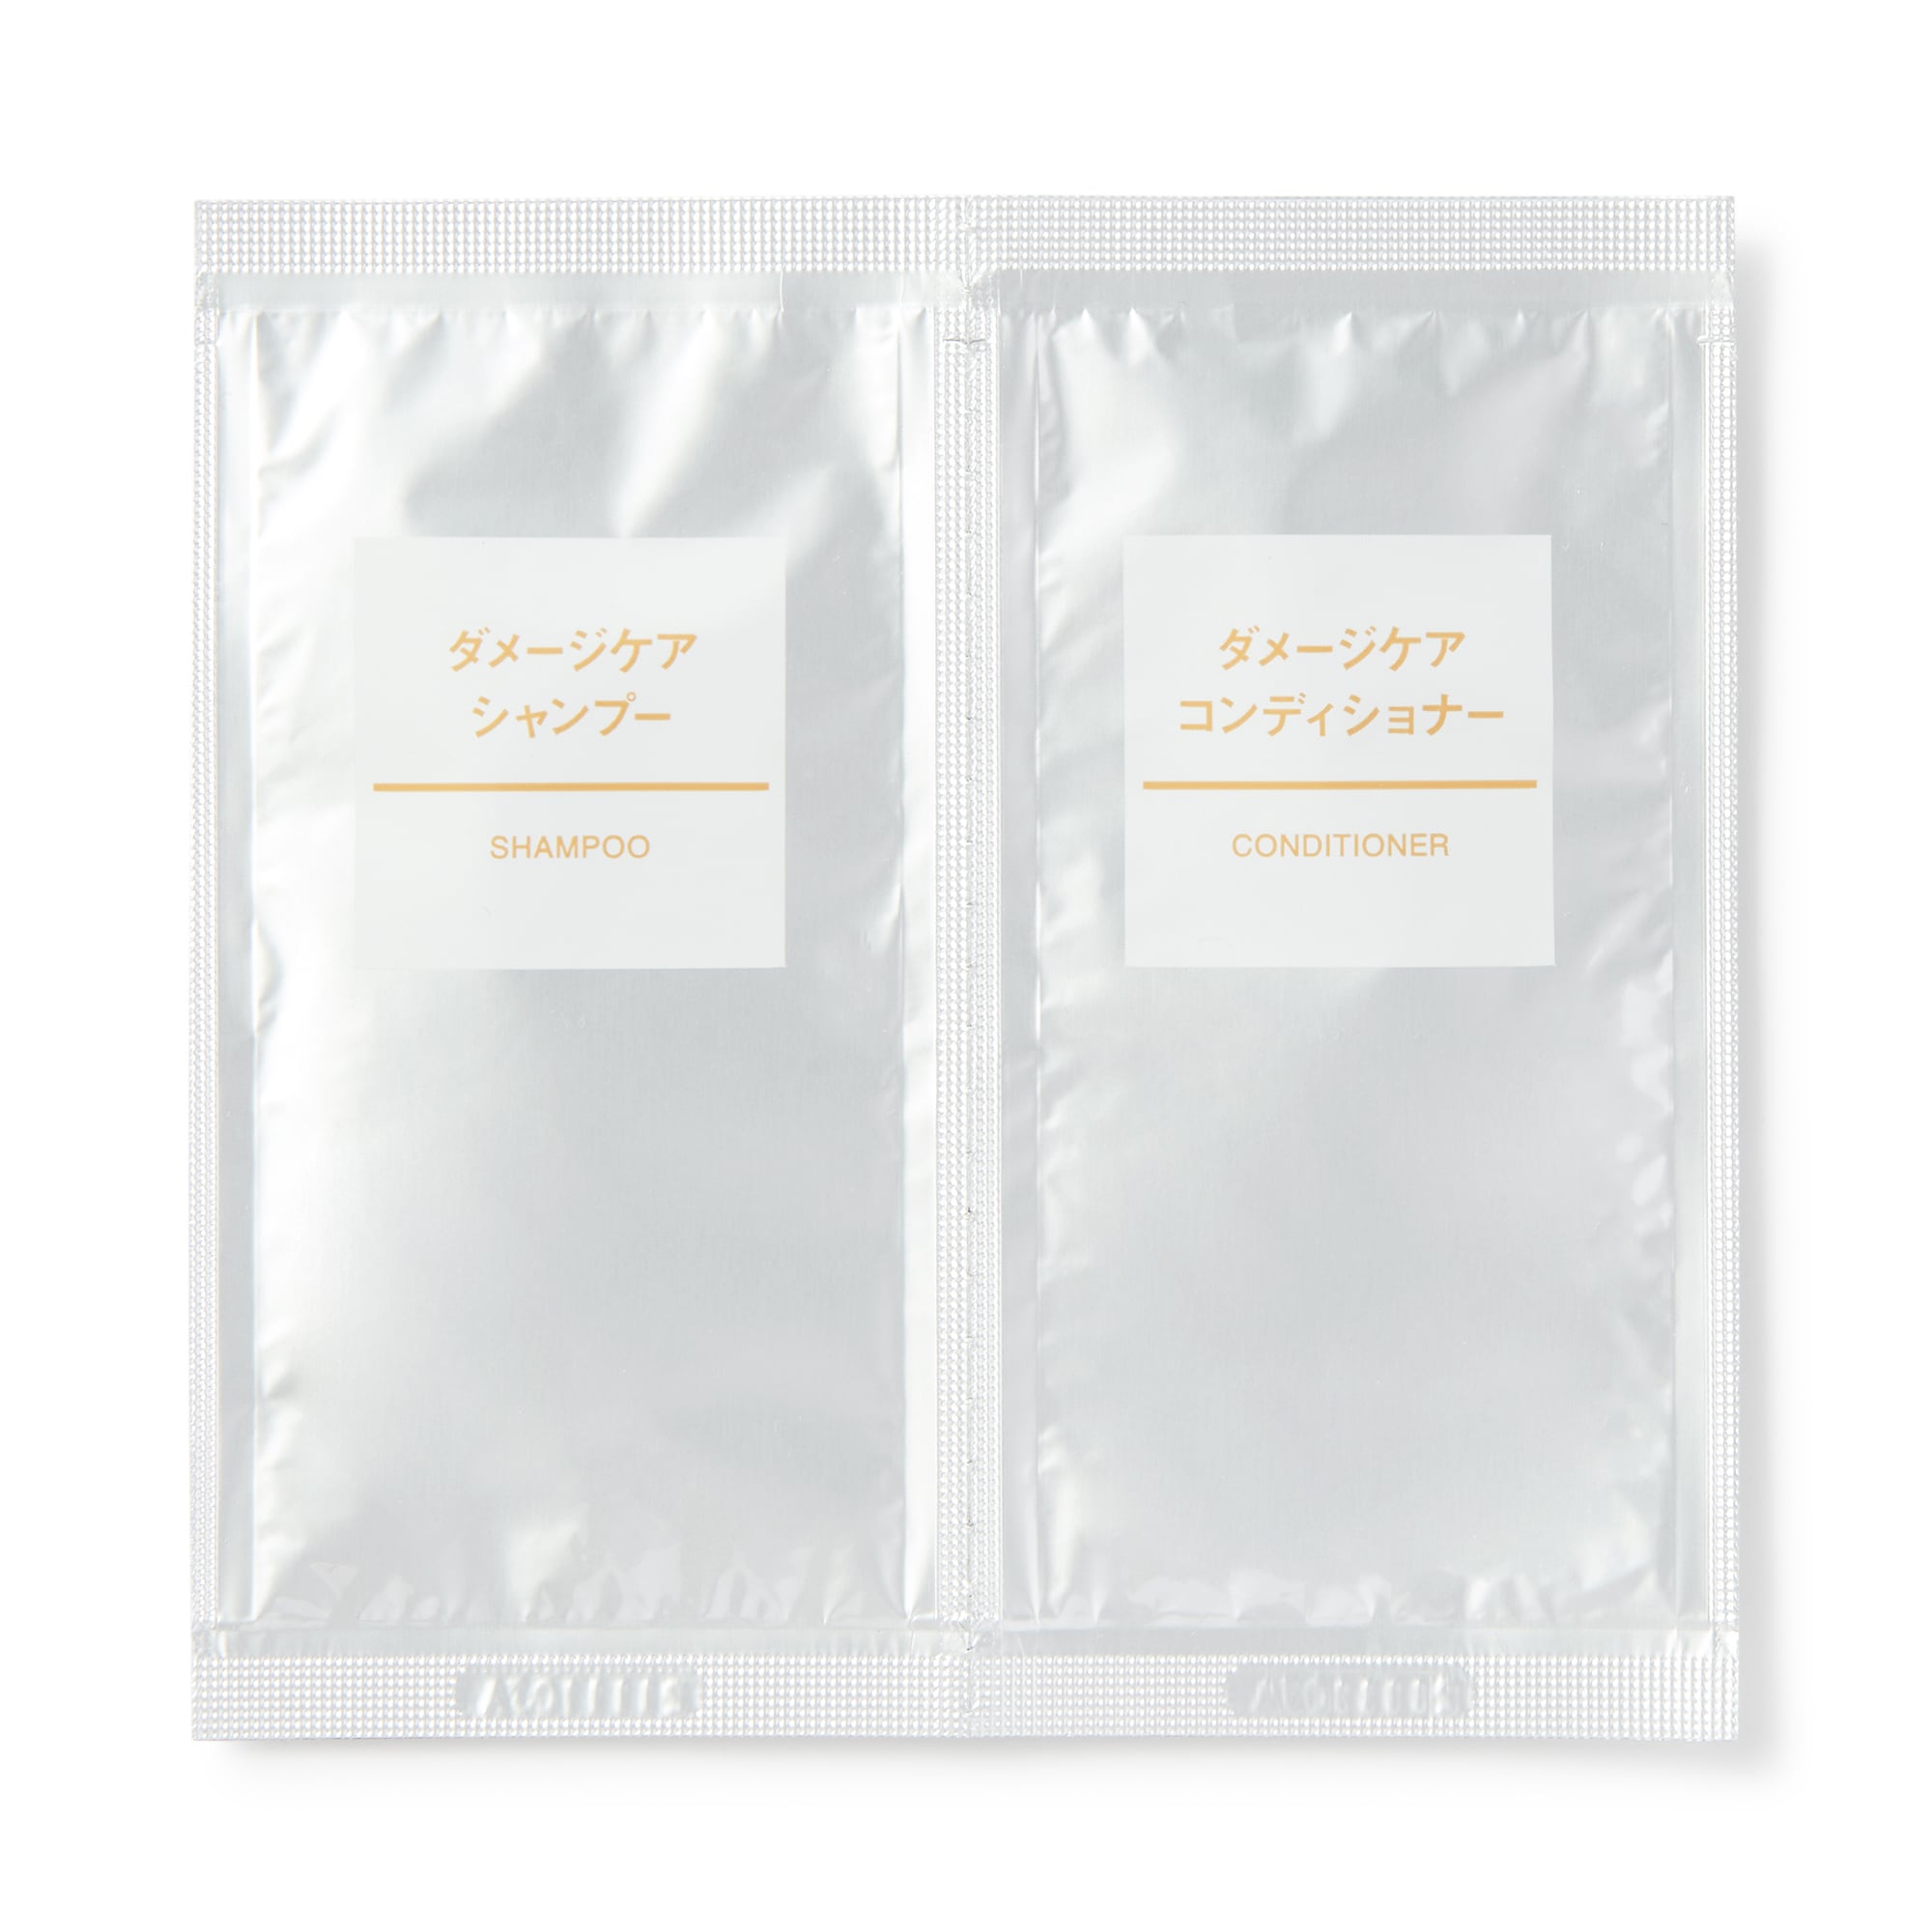 무인양품 일본 케어 샴푸/컨디셔너 세트